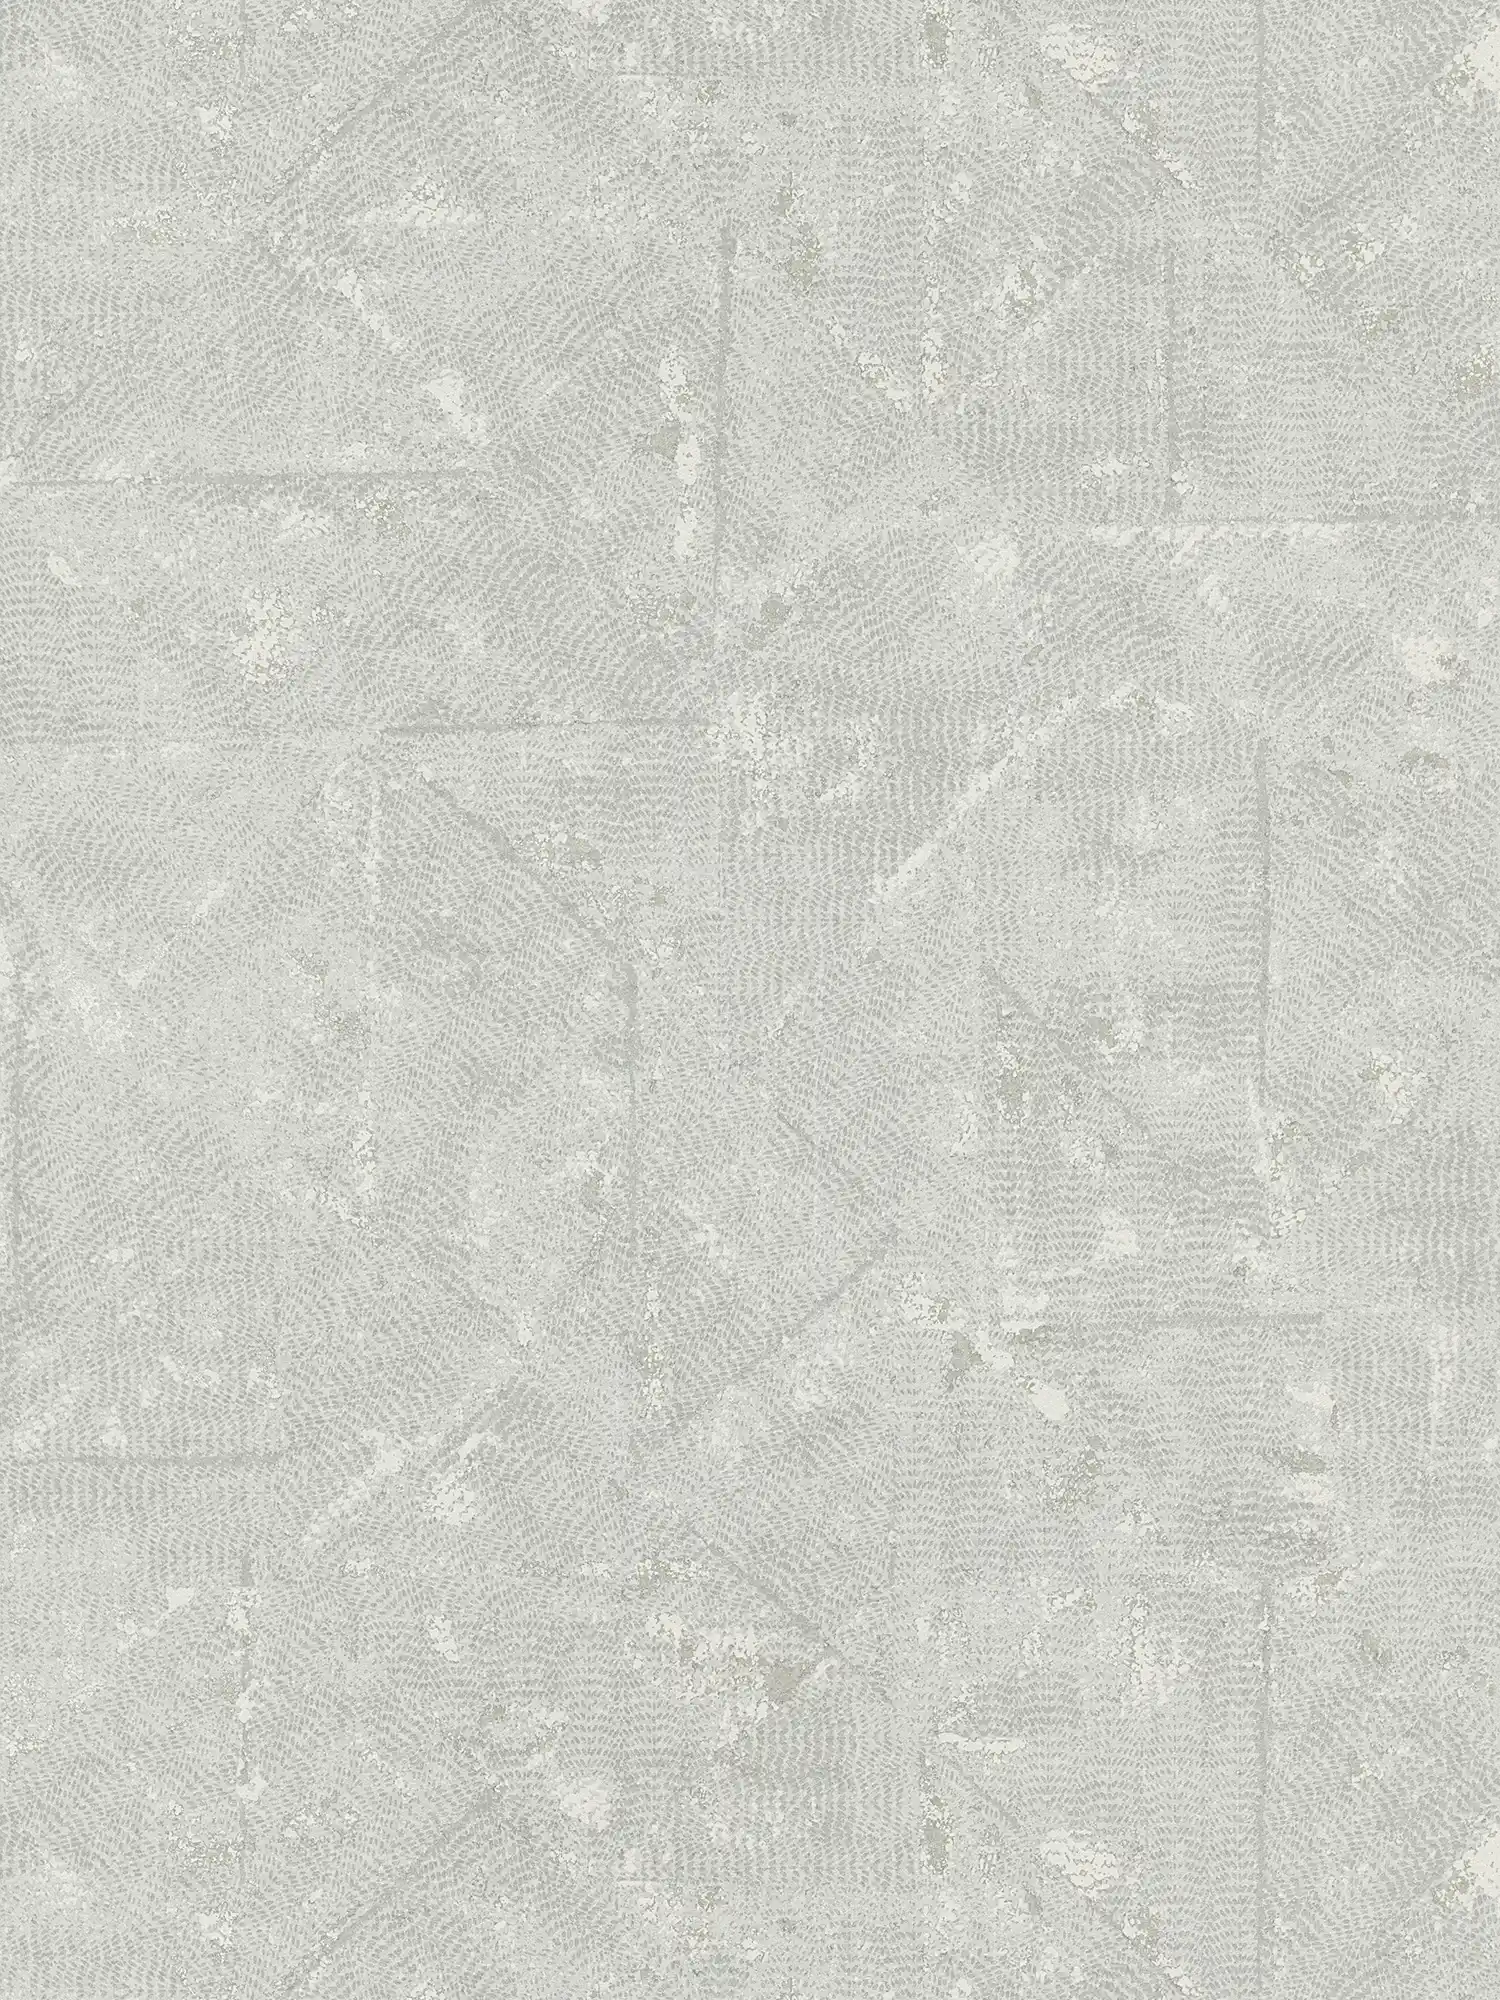 Papier peint gris clair uni avec détails asymétriques - gris, argenté
